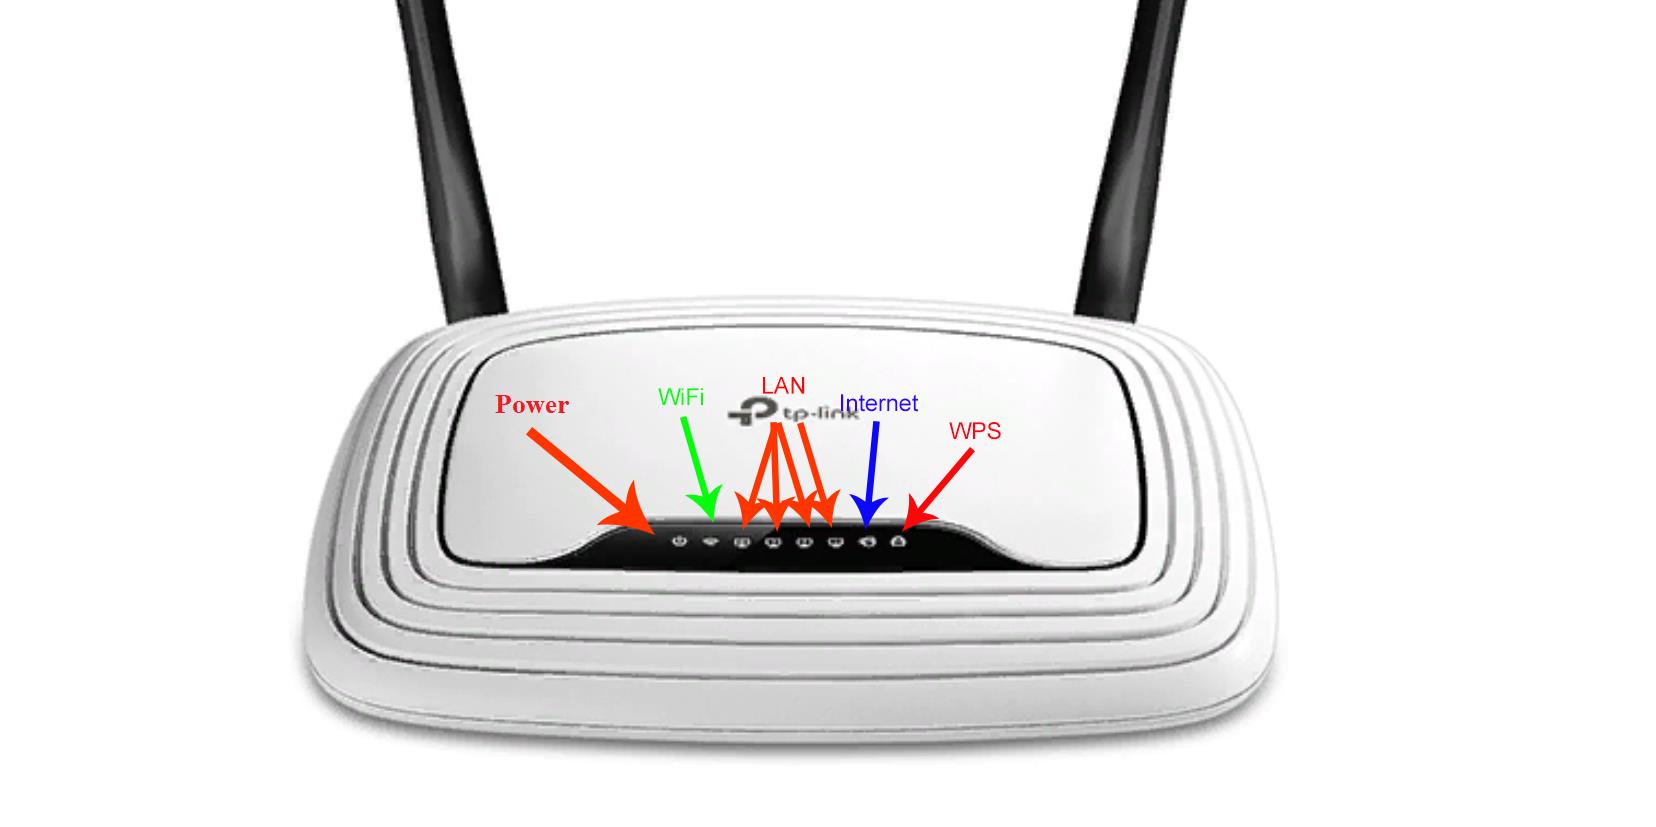 TP-link TL-WR841N router led indicators